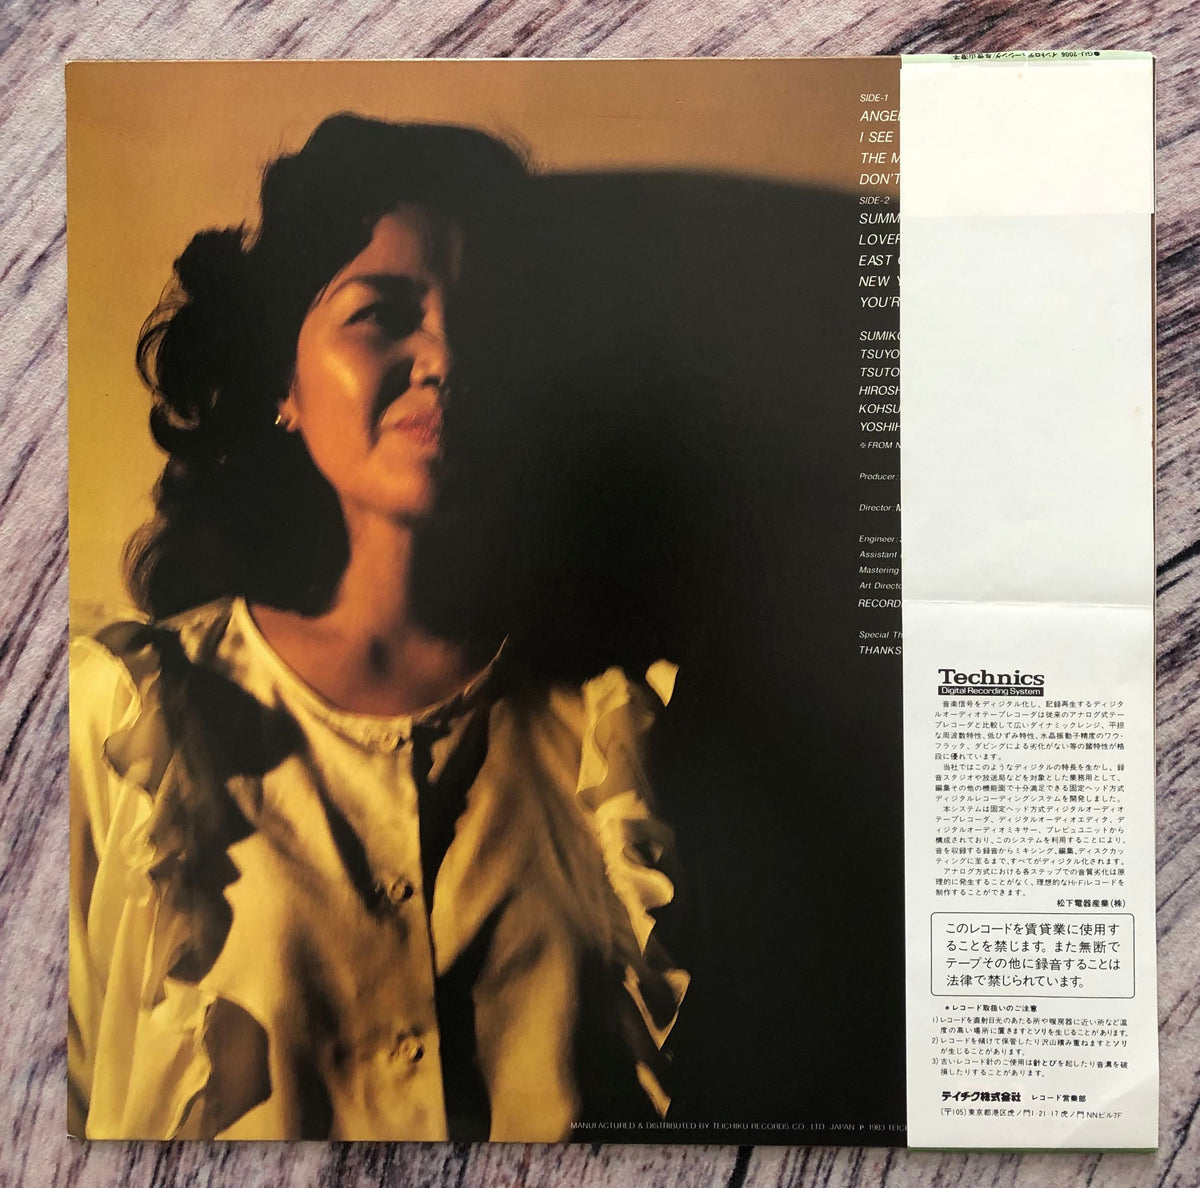 Sumiko Yoseyama = 与世山澄子 – Introducing – Galapagos Records